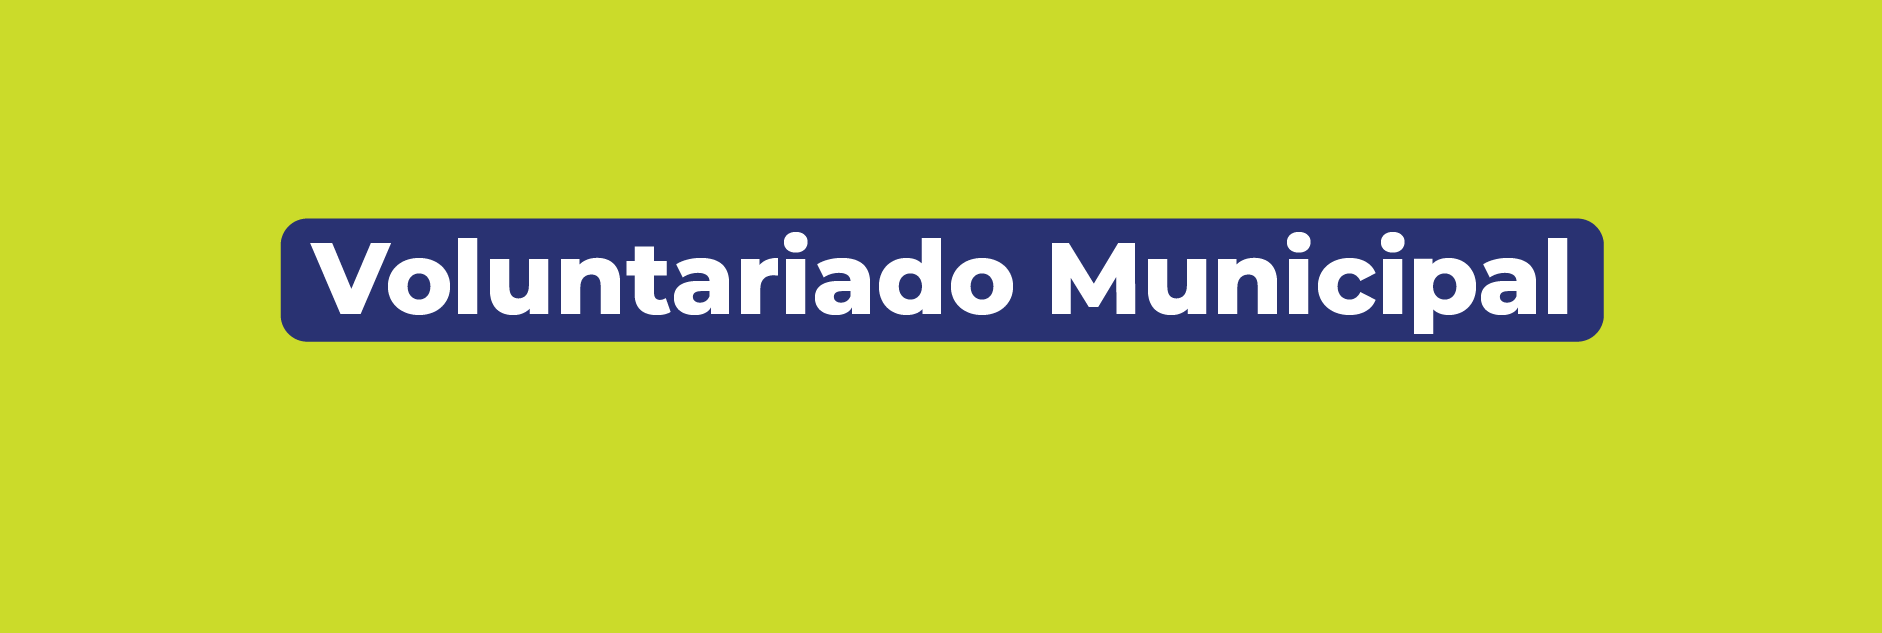 Banner de voluntariado municipal